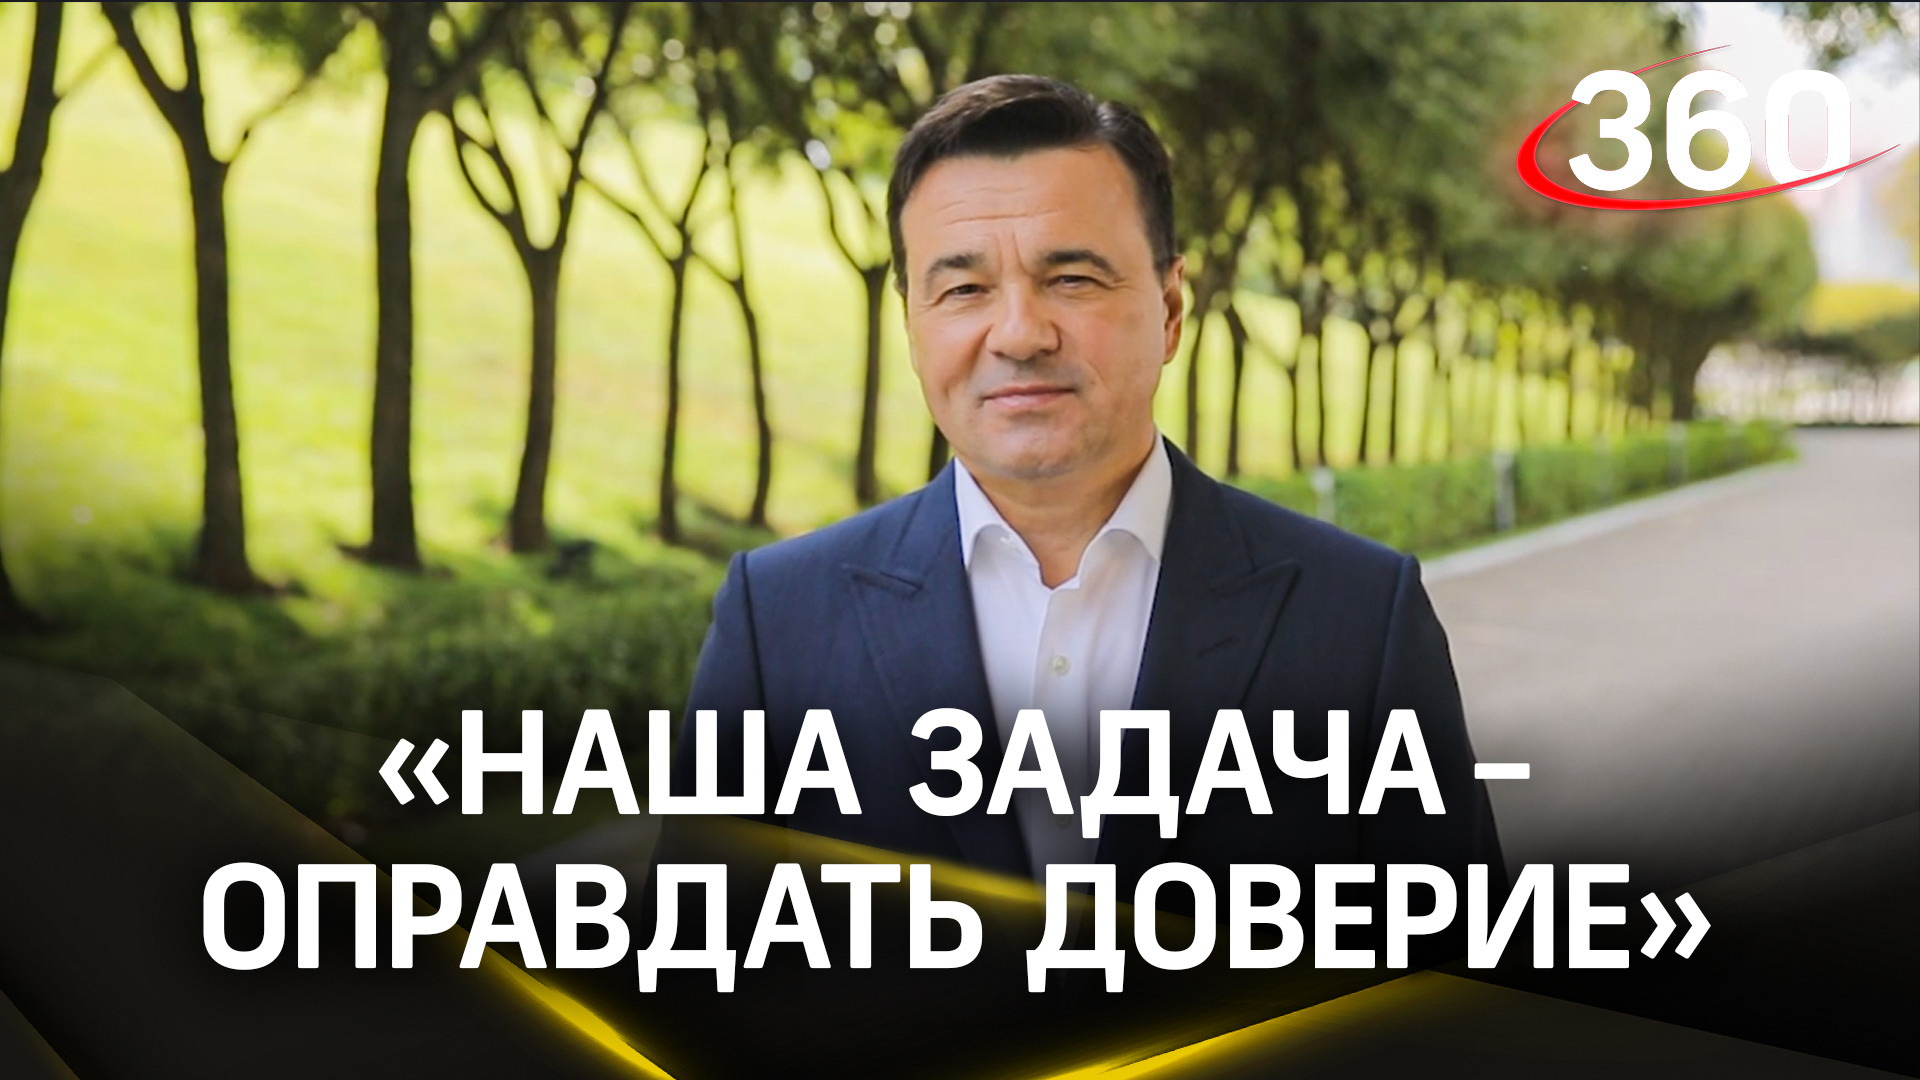 «Задача наша - не снижать темп»: Андрей Воробьев поблагодарил жителей за активное участие в выборах